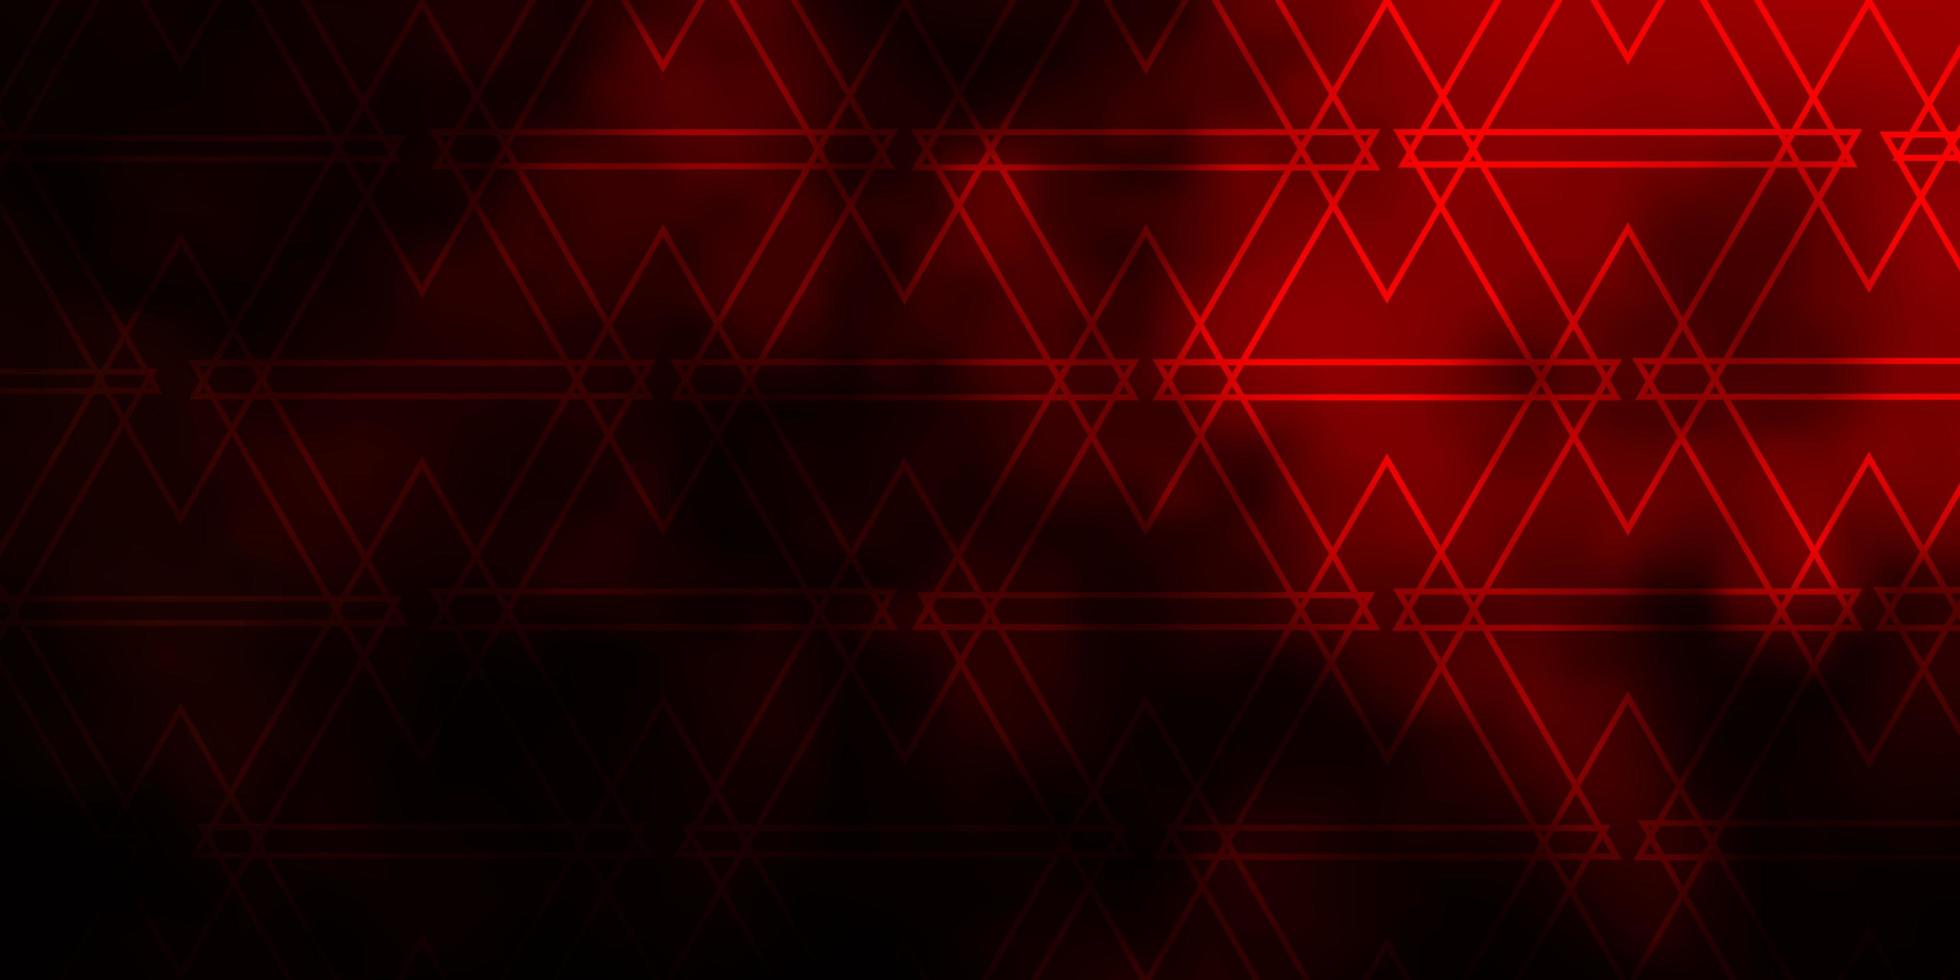 Fondo de vector rojo oscuro con estilo poligonal.